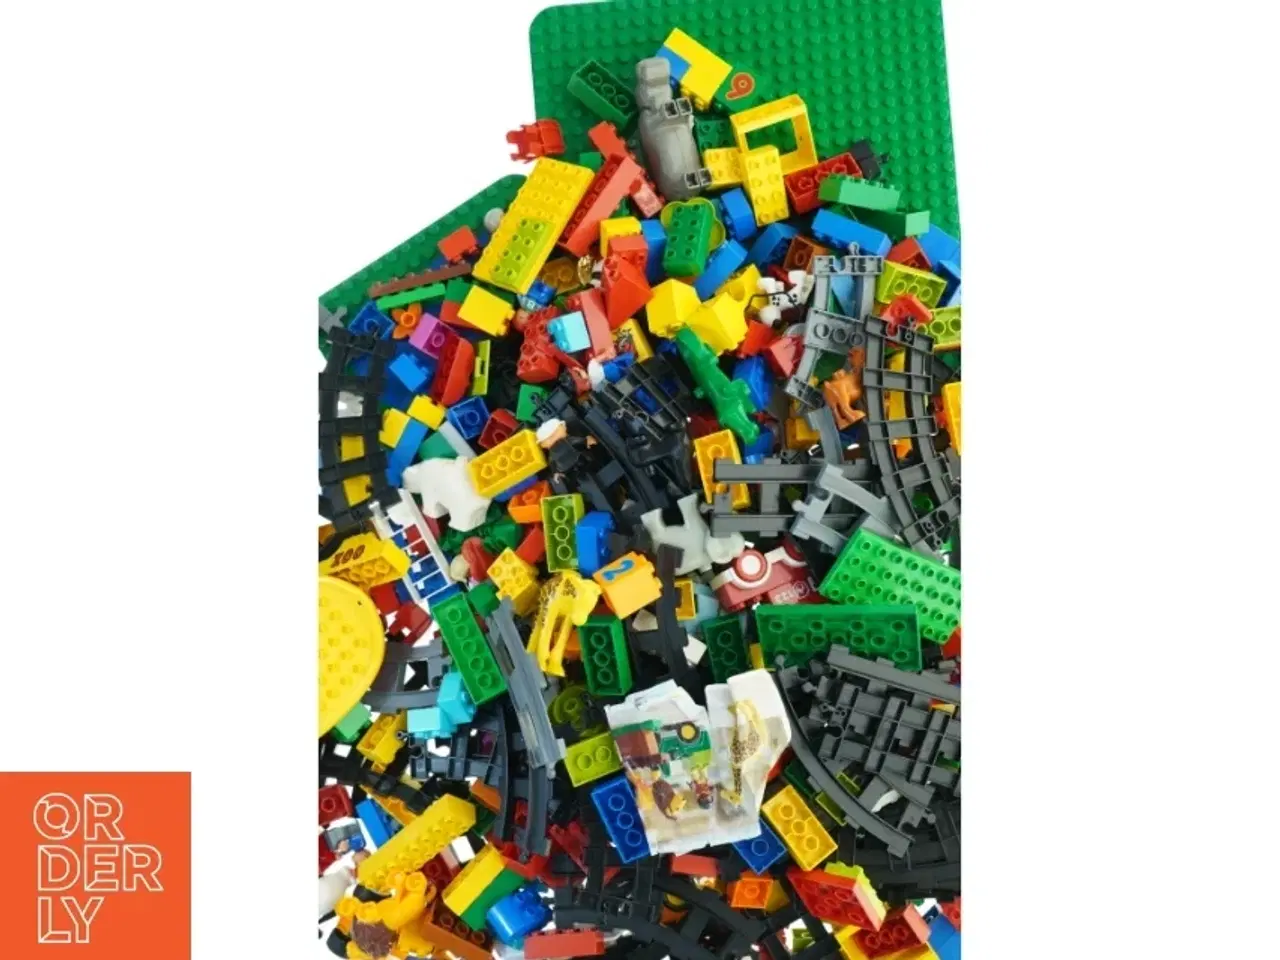 Billede 1 - Blandede LEGO klodser fra Lego (str. 58 x 40 cm)